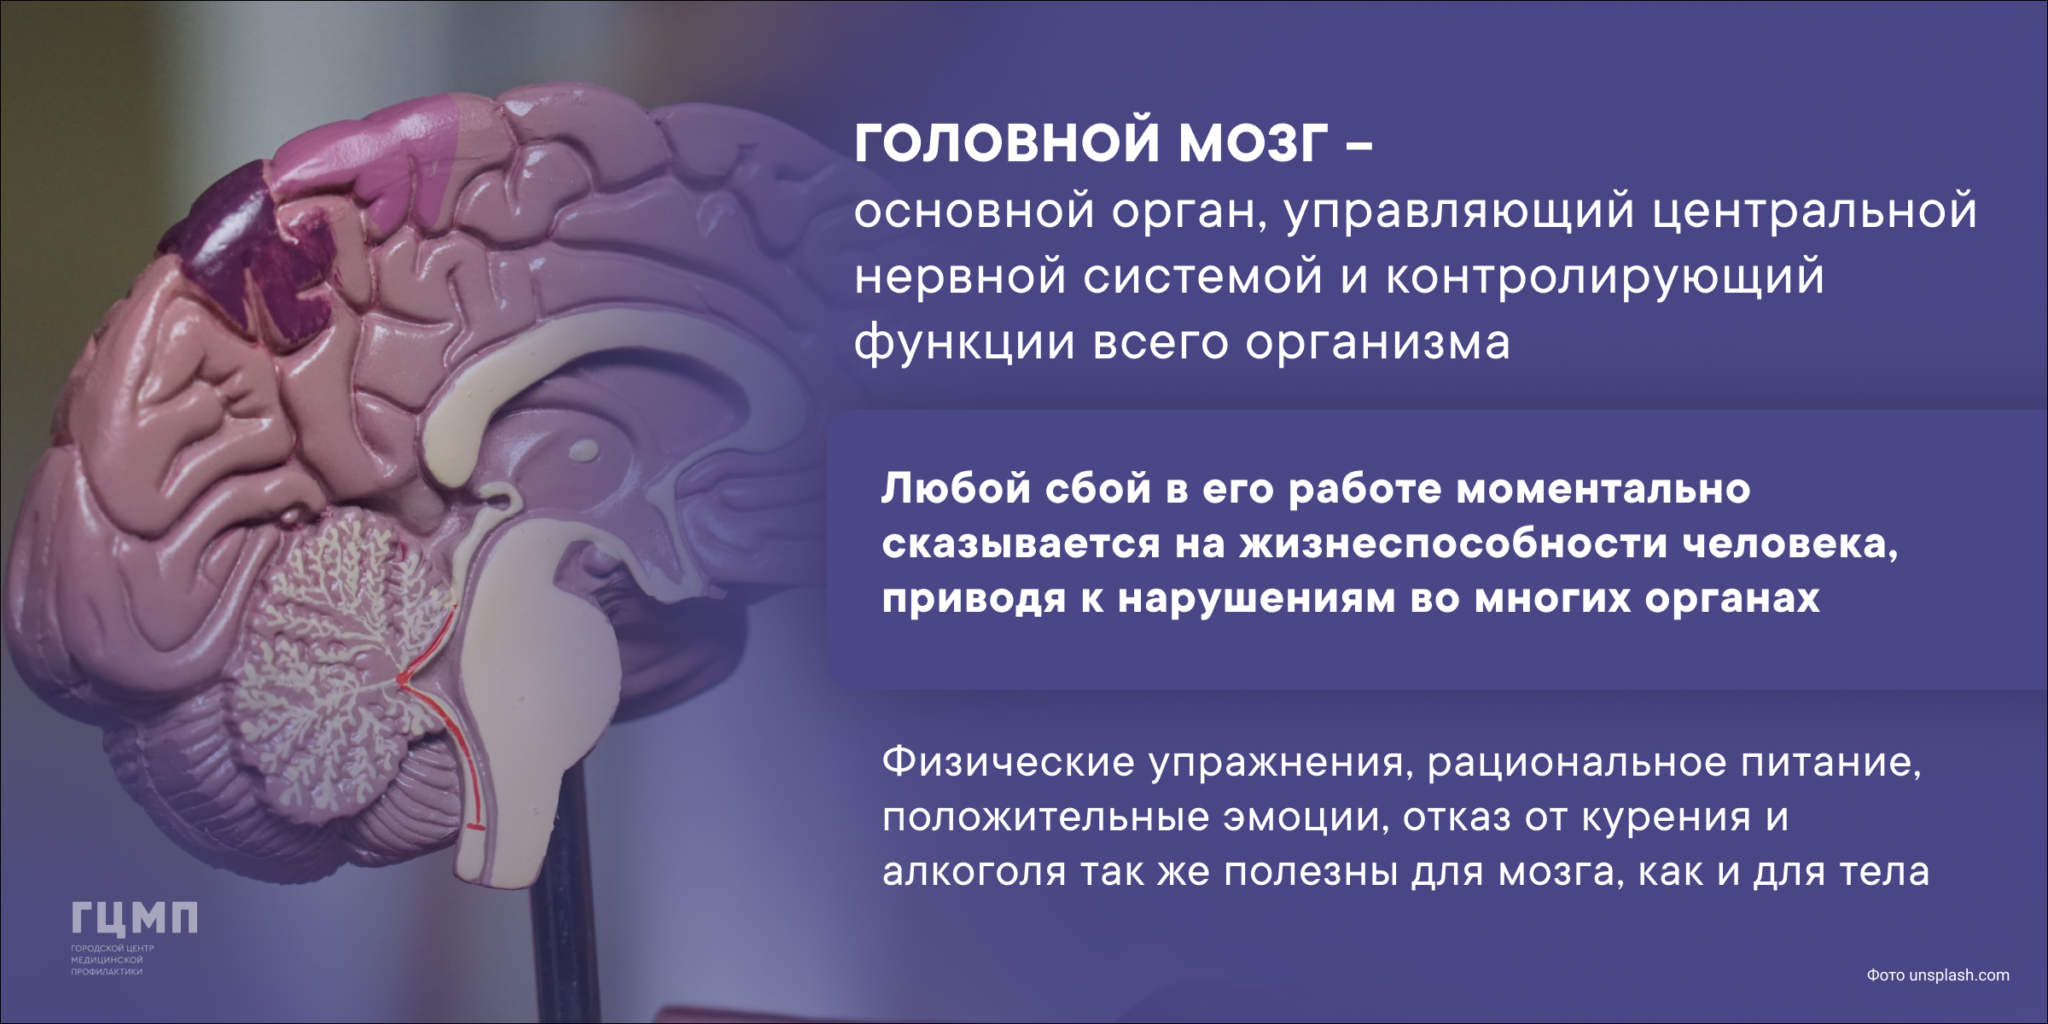 Brain 23. Деятельность головного мозга. Образования головного мозга. Неделя сохранения головного мозга. Аномалии головного мозга.